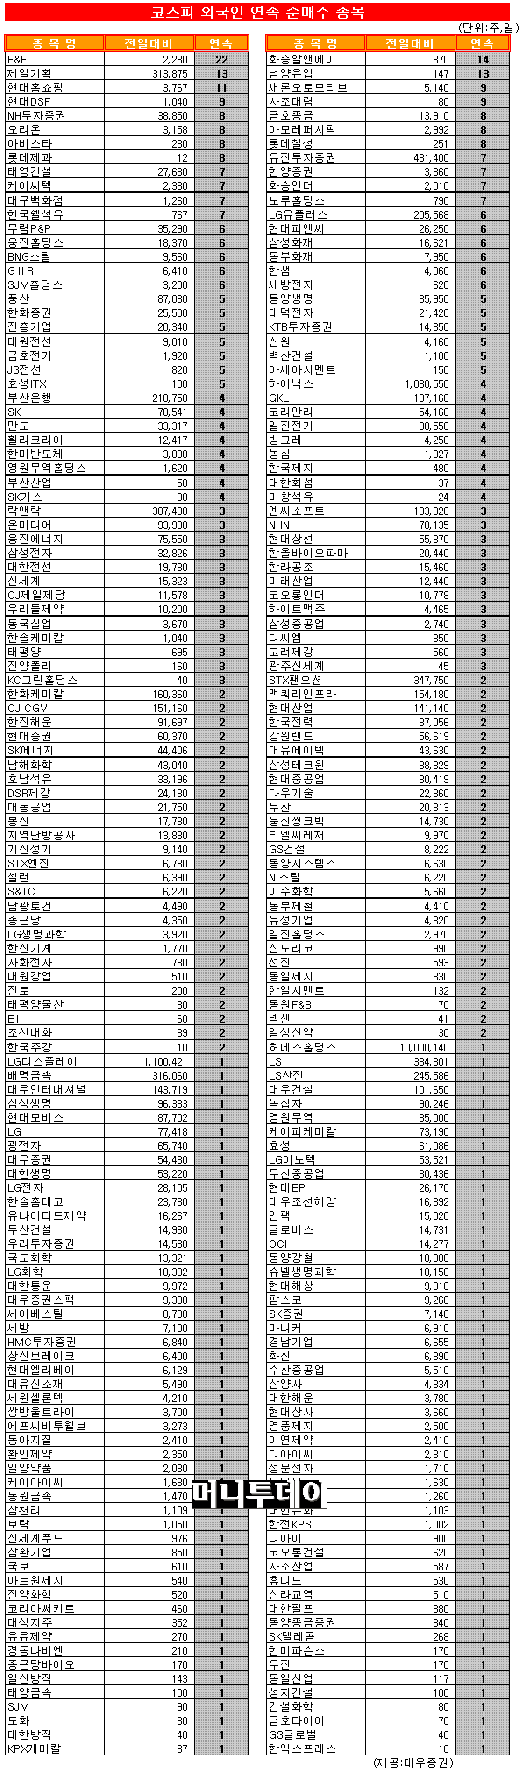 [표]코스피 외국인 연속 순매수 종목-24일